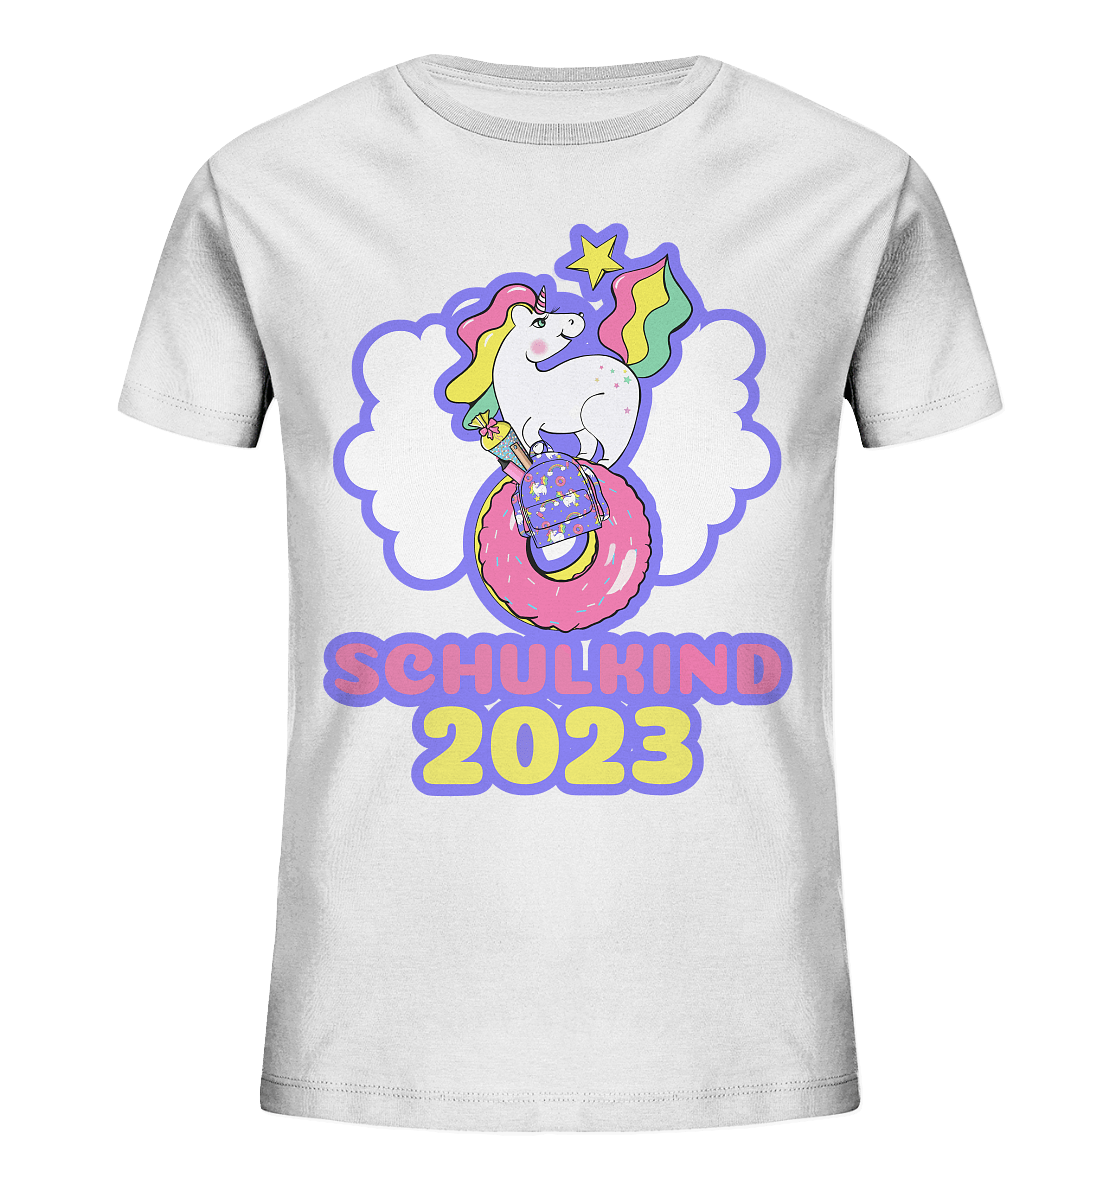 Schulkind-Shirt-2023-Einhorn-weiß